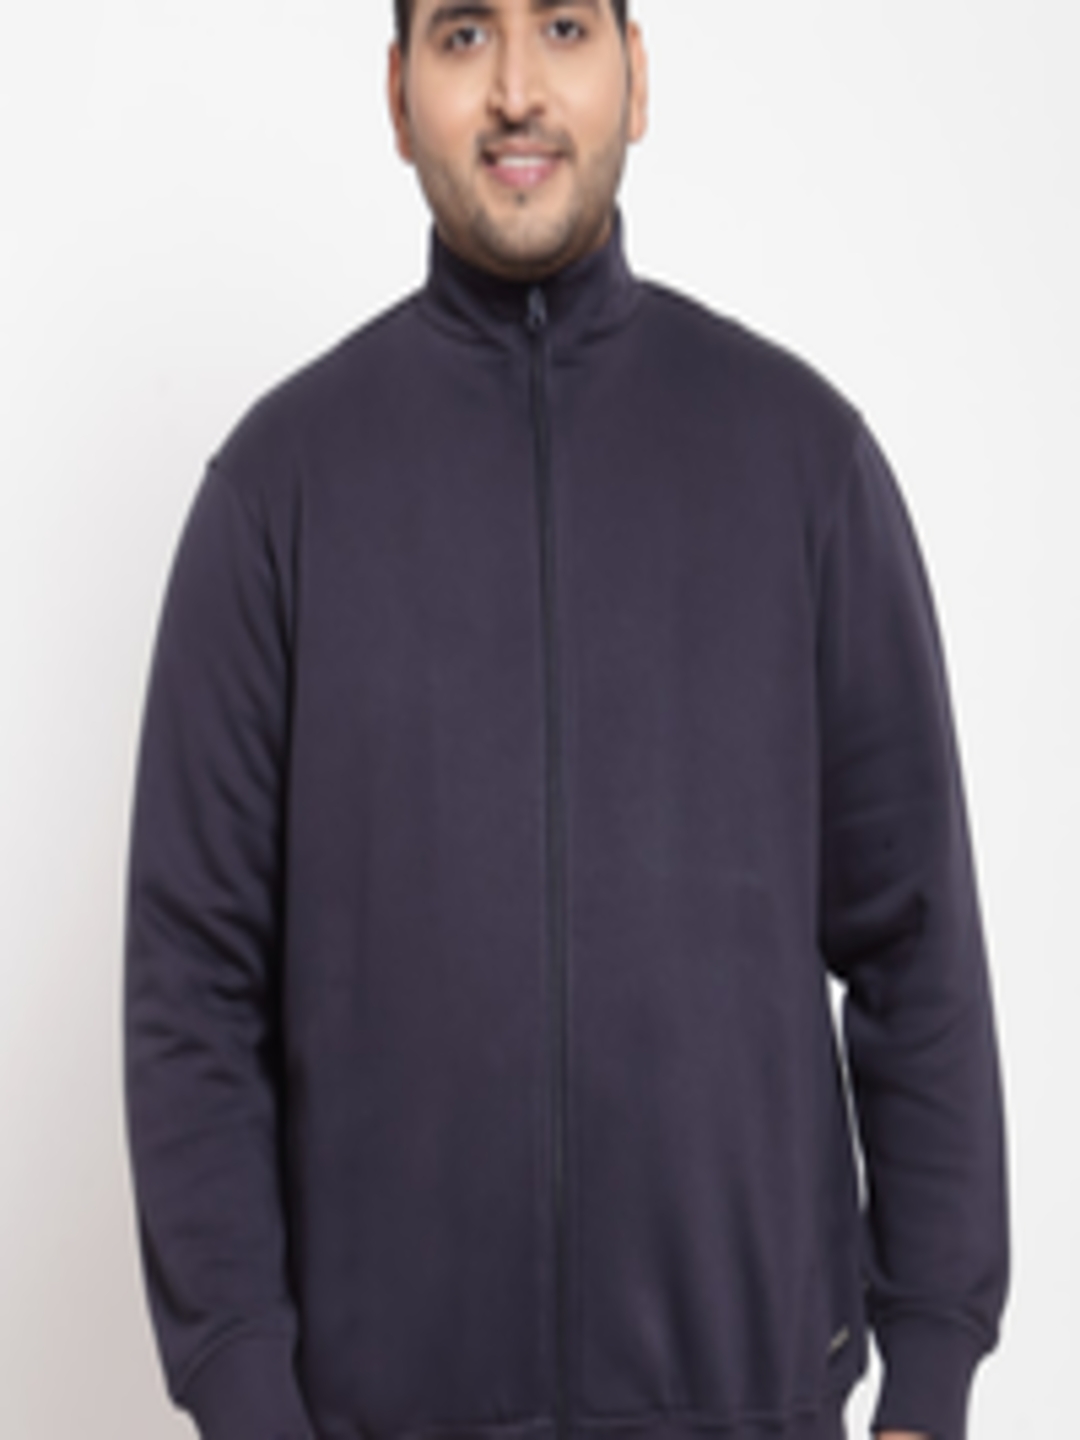 Buy PlusS Men Navy Blue Sweatshirt - Sweatshirts for Men 15933694 | Myntra